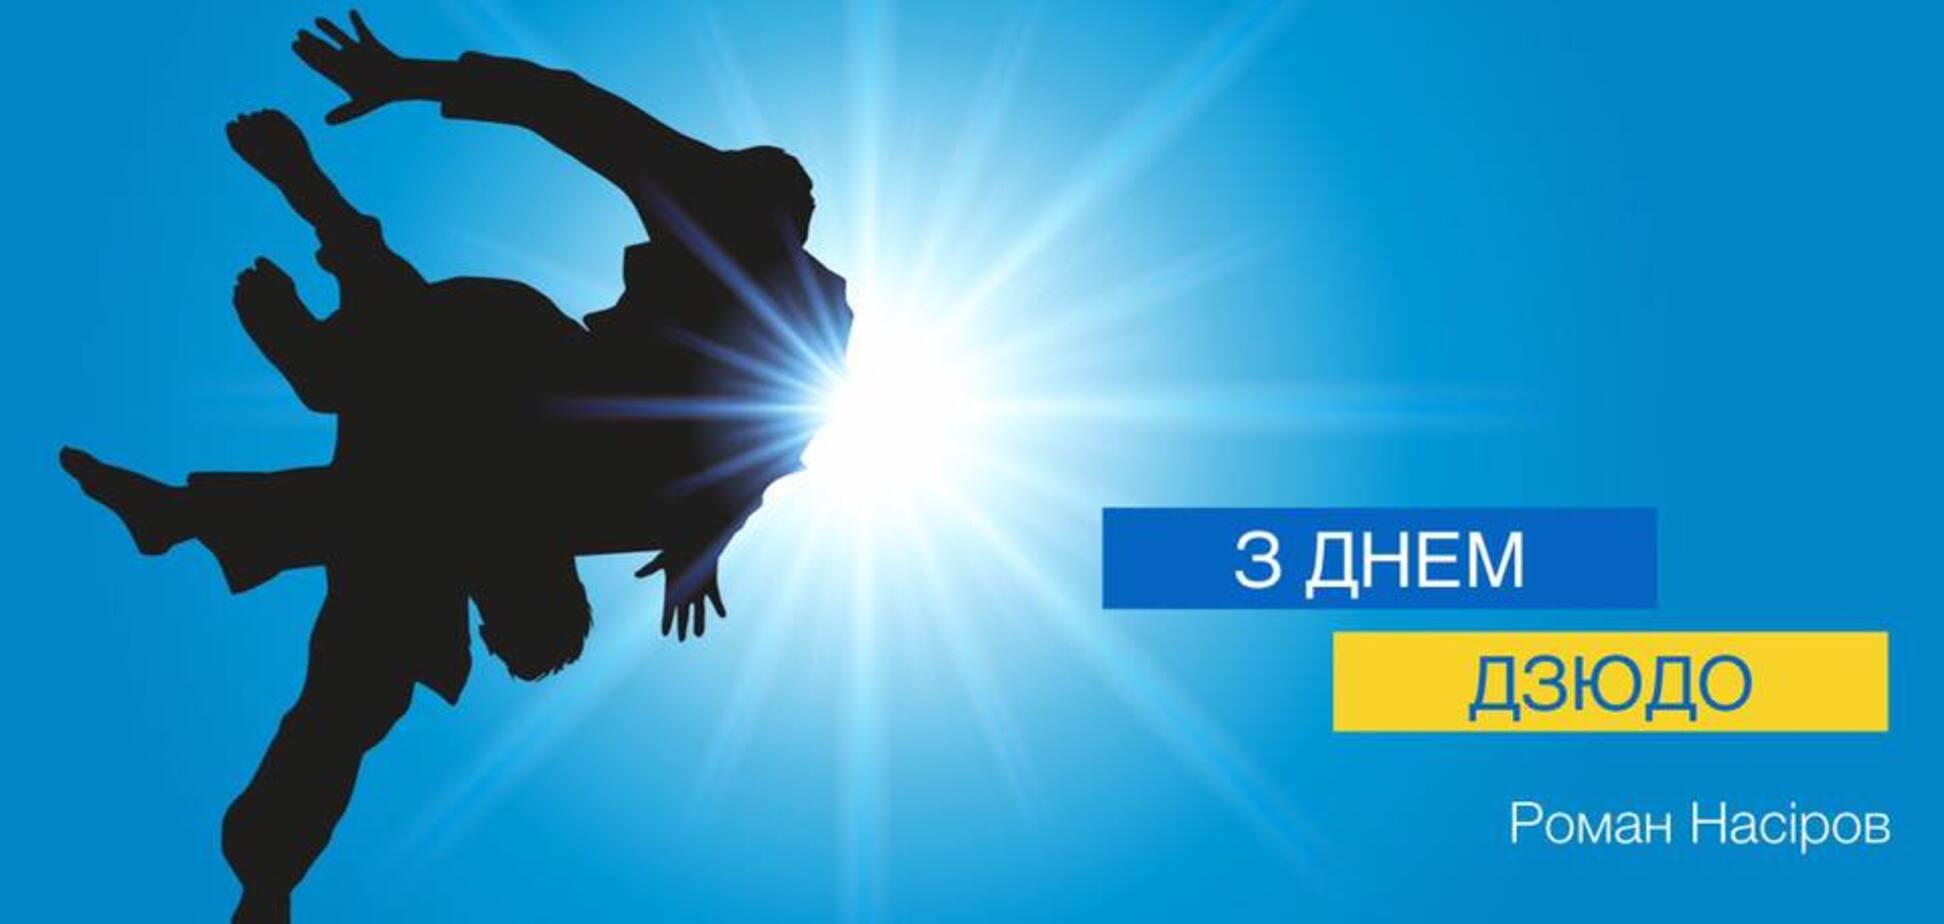  Насиров поздравил Украину с большим спортивным праздником